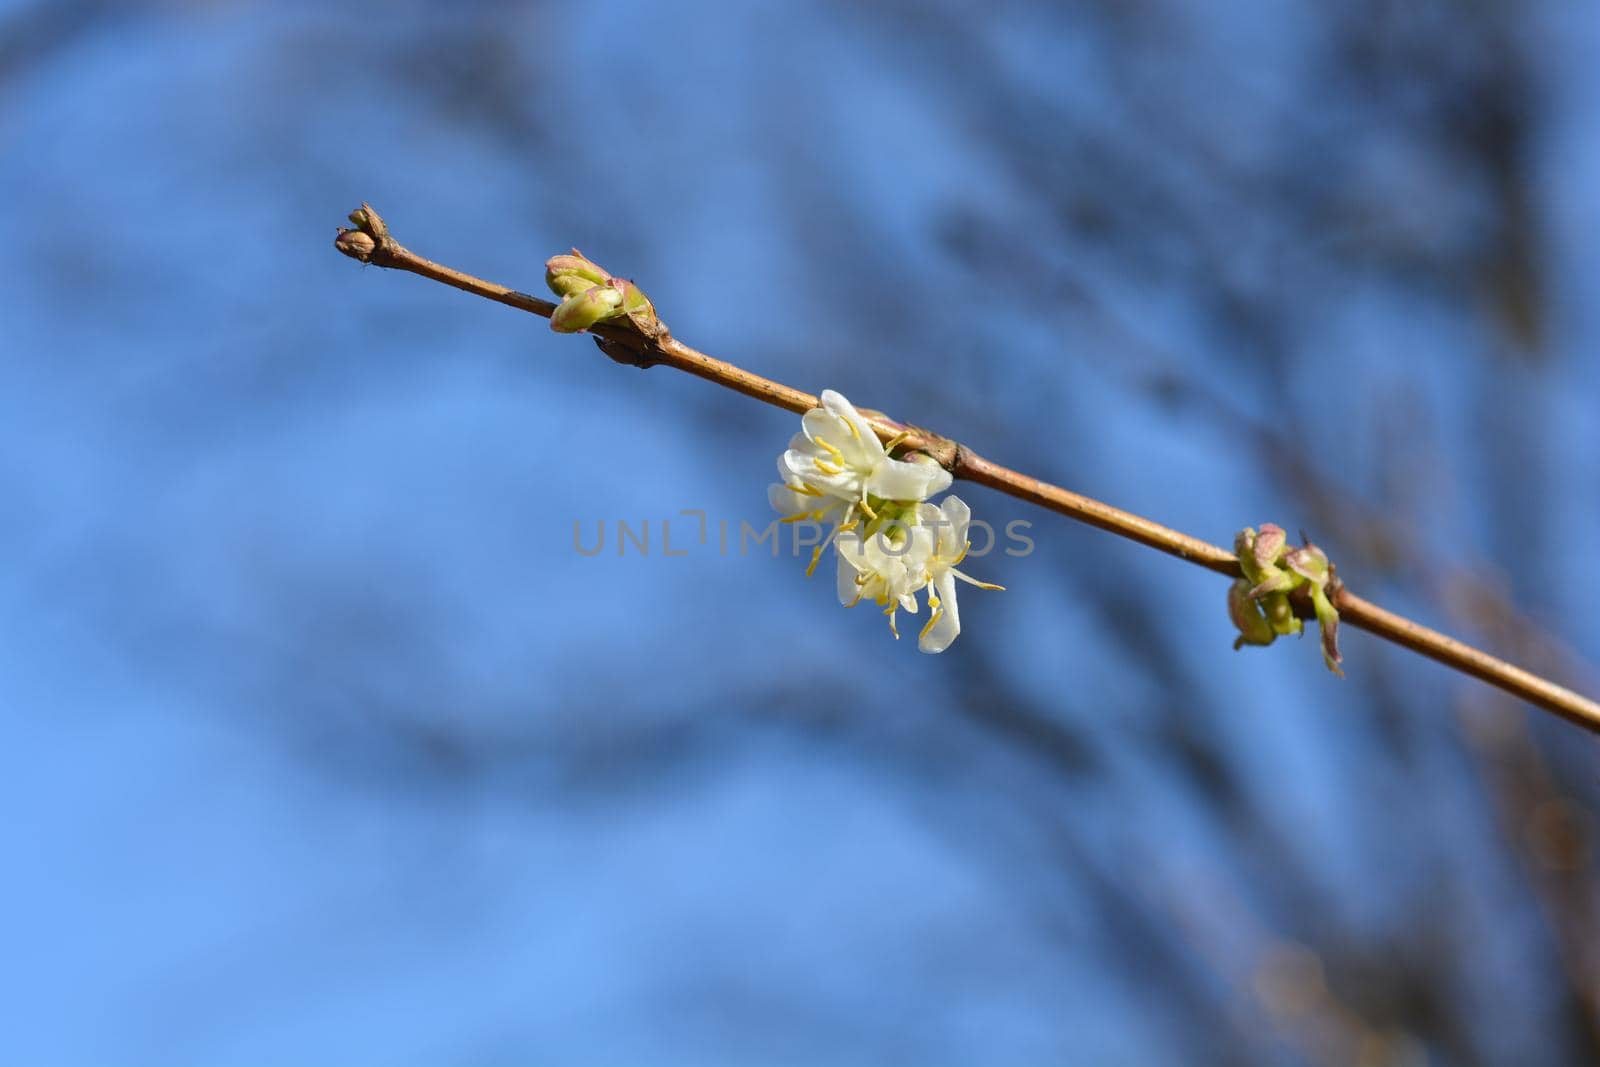 Winter flowering honeysuckle by nahhan